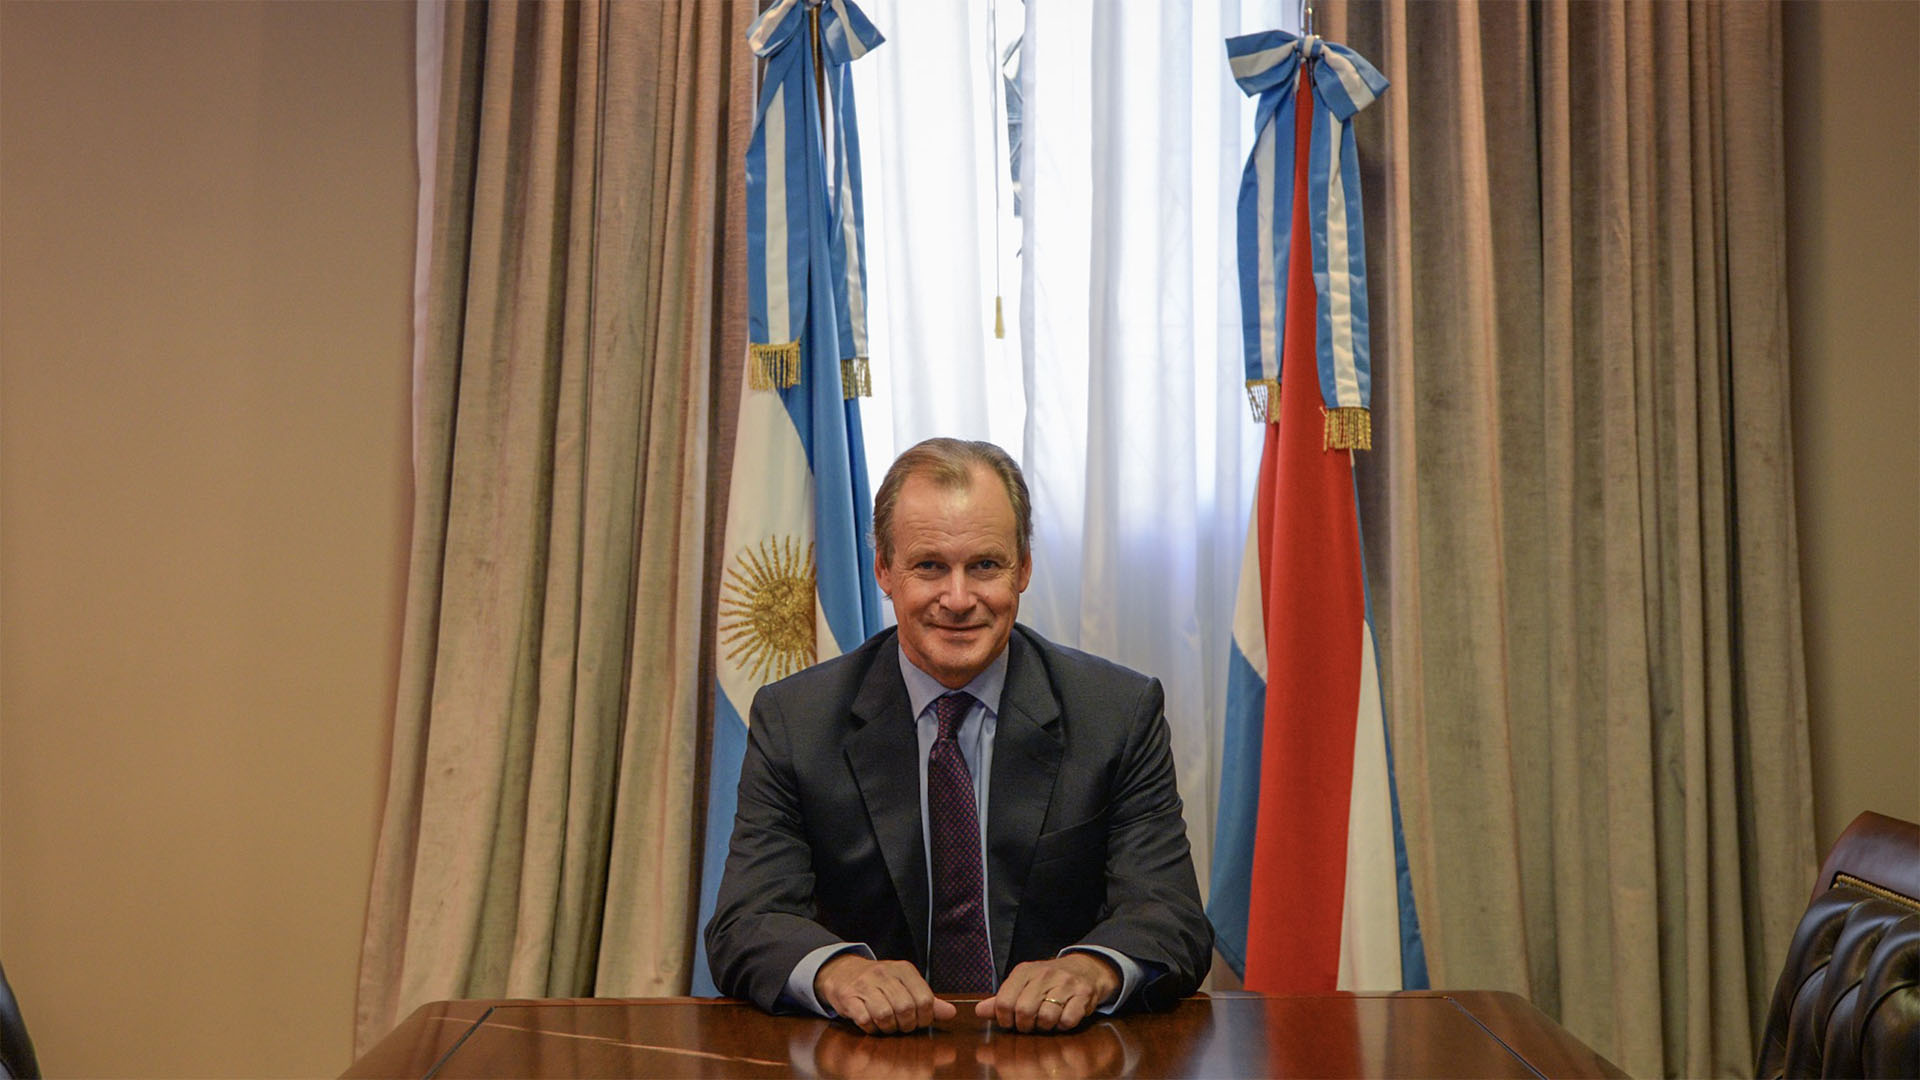 El Gobernador de Entre Ríos, Gustavo Bordet, pidió por las economías regionales de su provincia. (Julieta Ferrario)